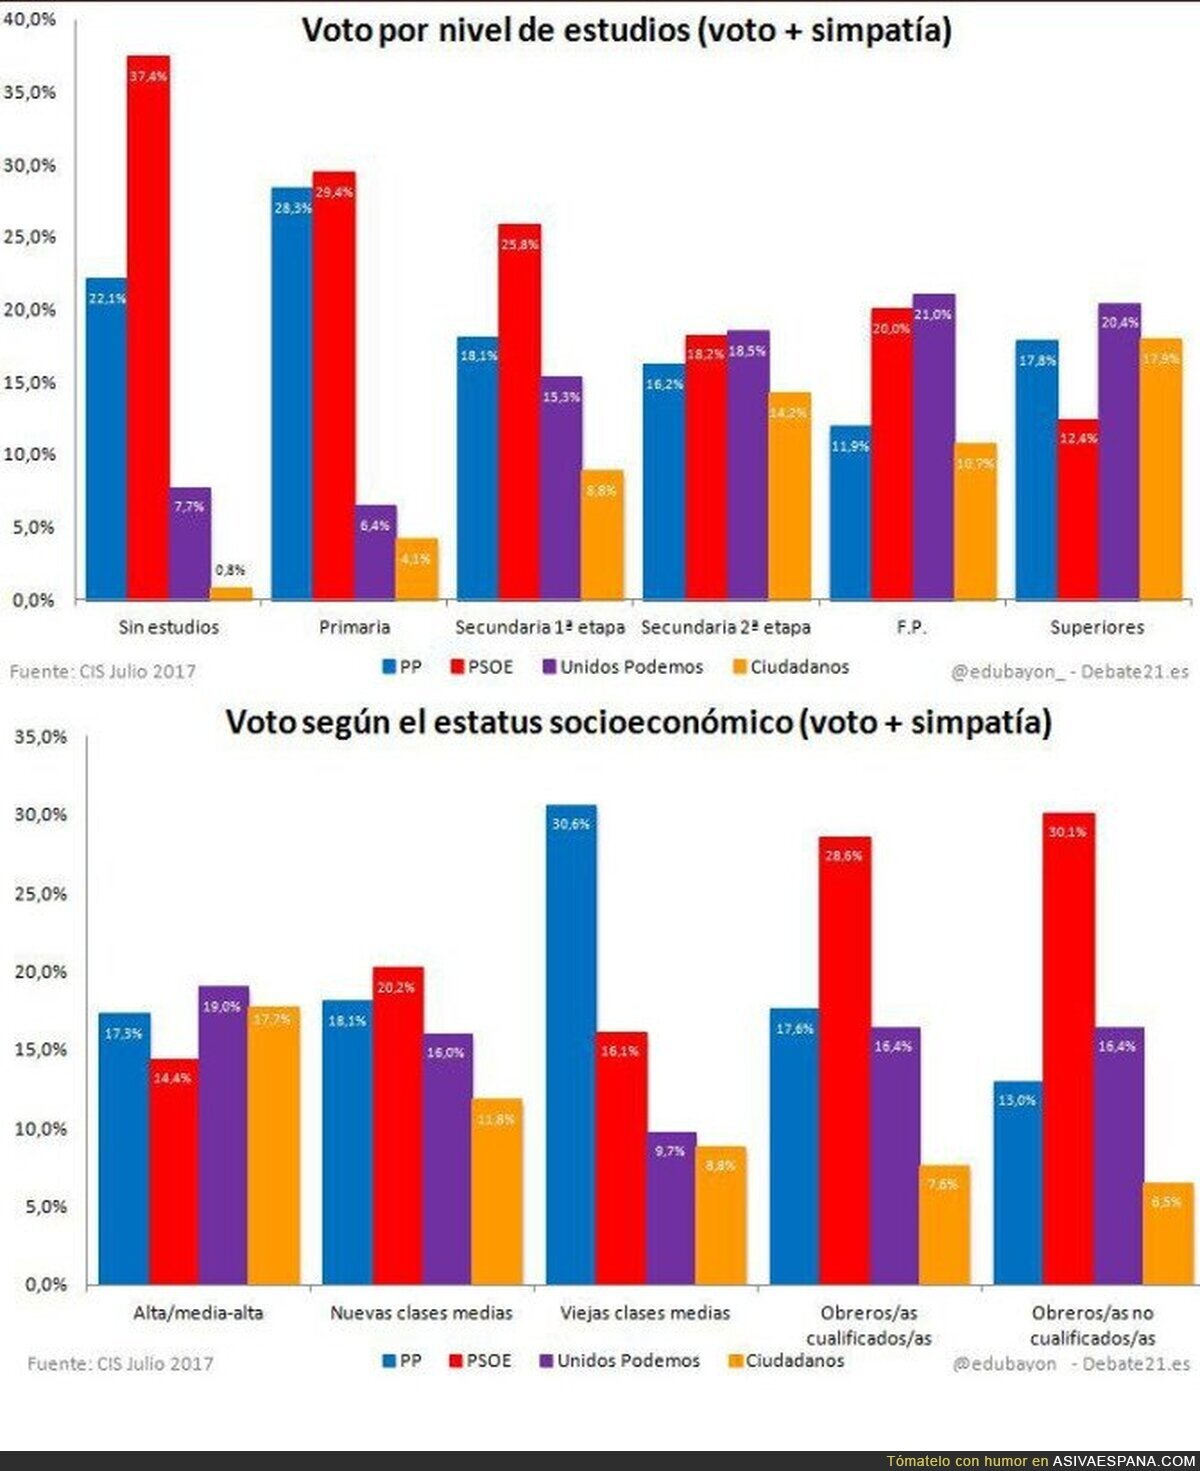 El perfil del votante de Podemos según el CIS: Culto, joven y urbanita.